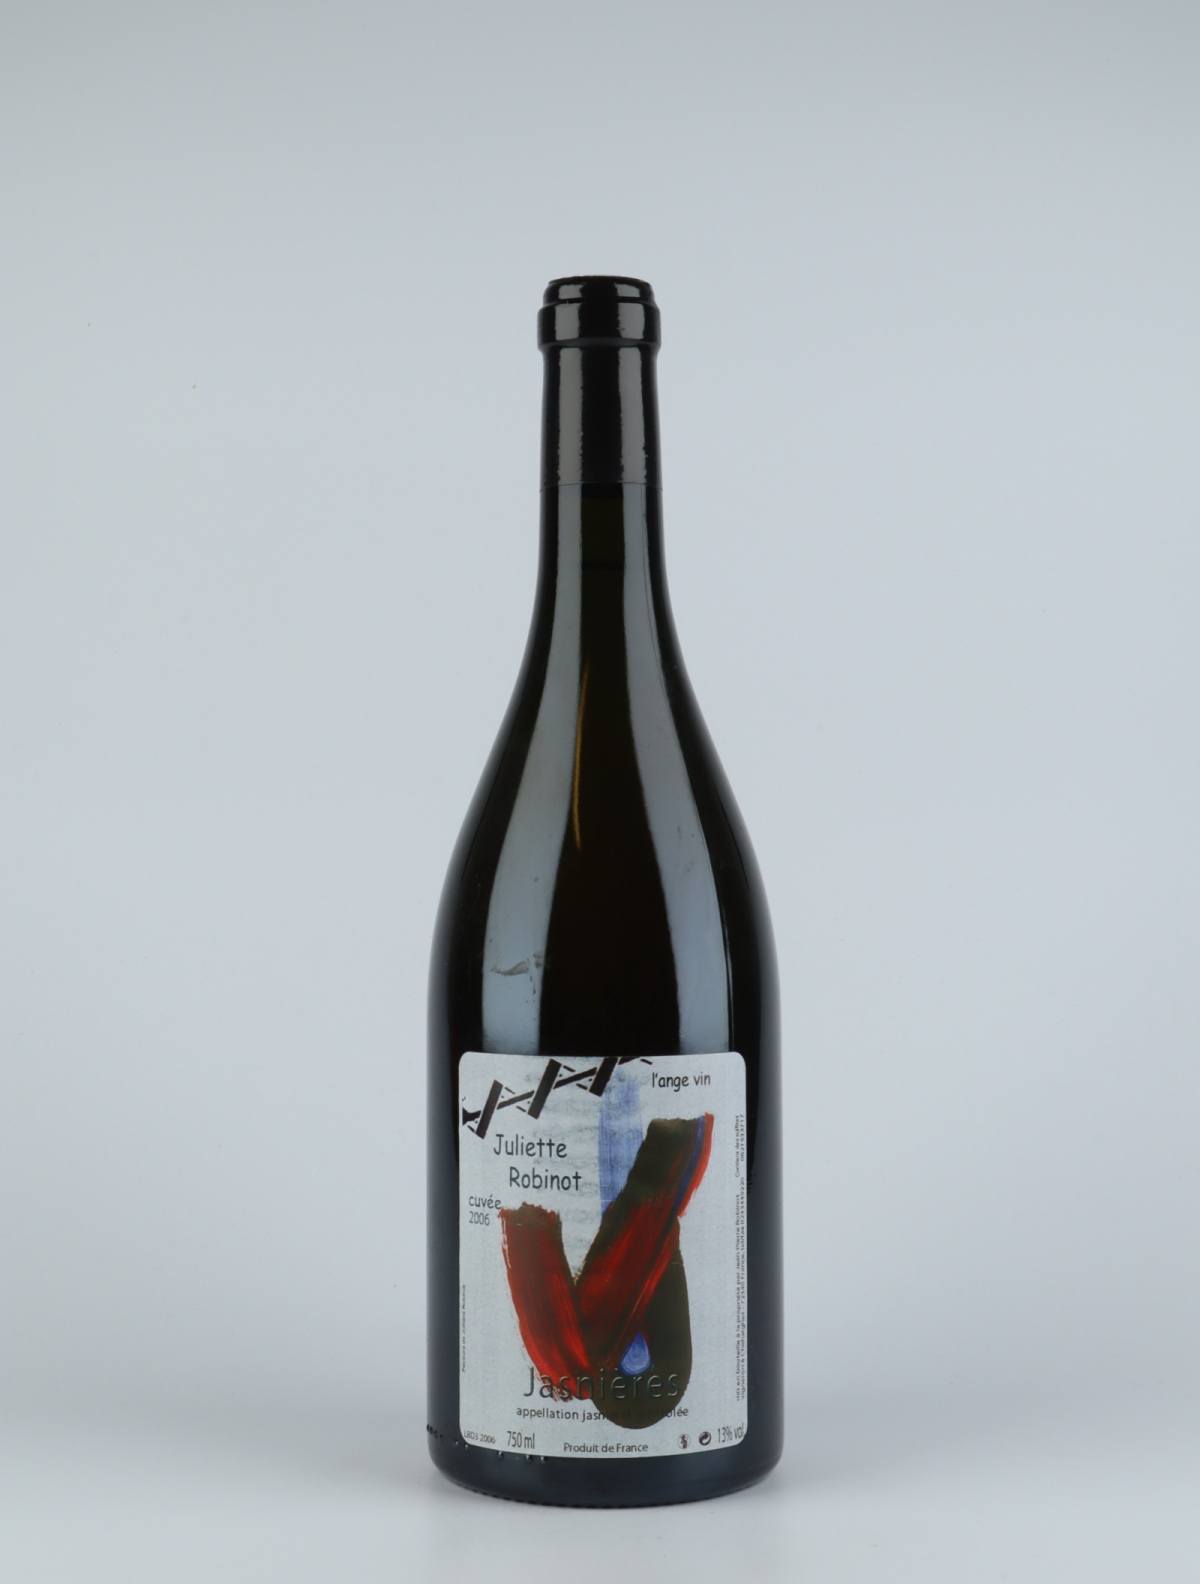 A bottle 2006 Juliette White wine from Jean-Pierre Robinot, Loire in France